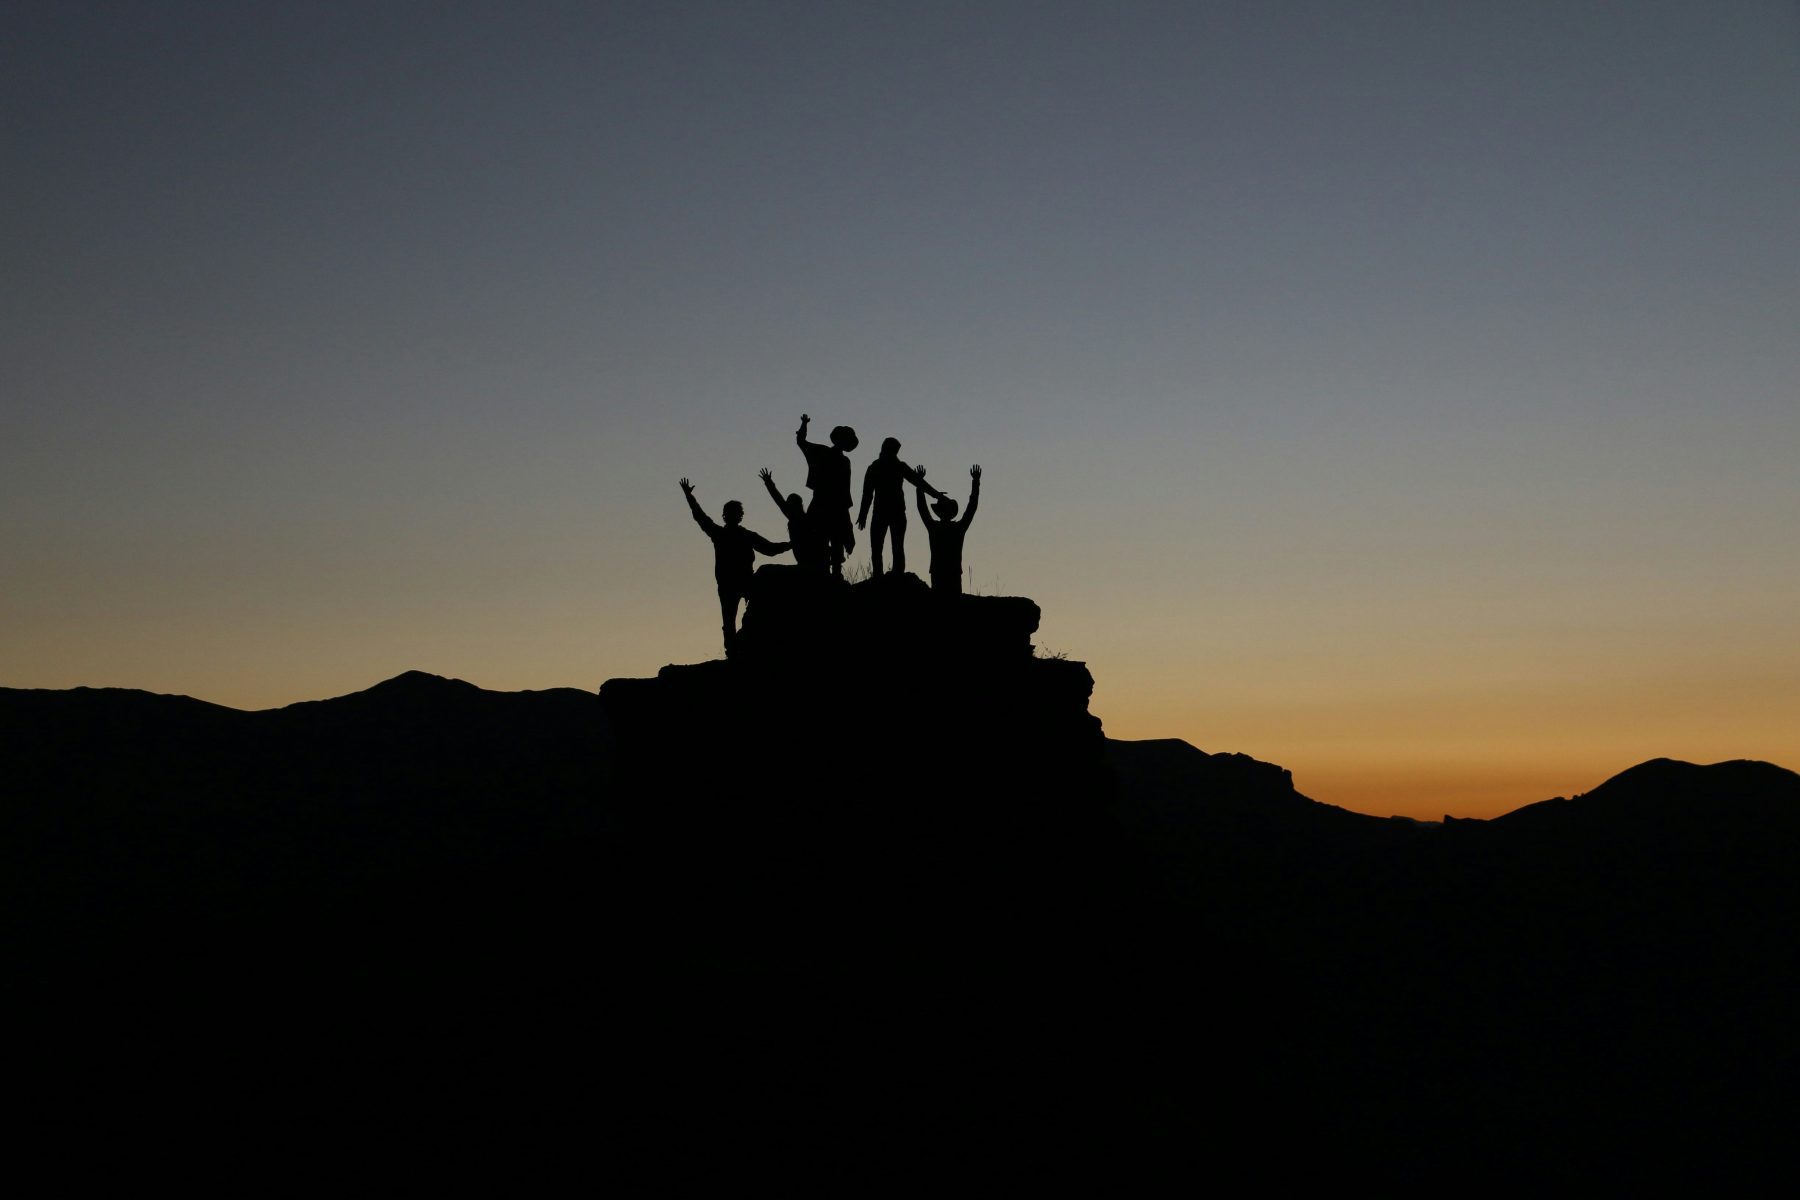 De silhouet van mensen op hoogland tijdens zonsondergang.